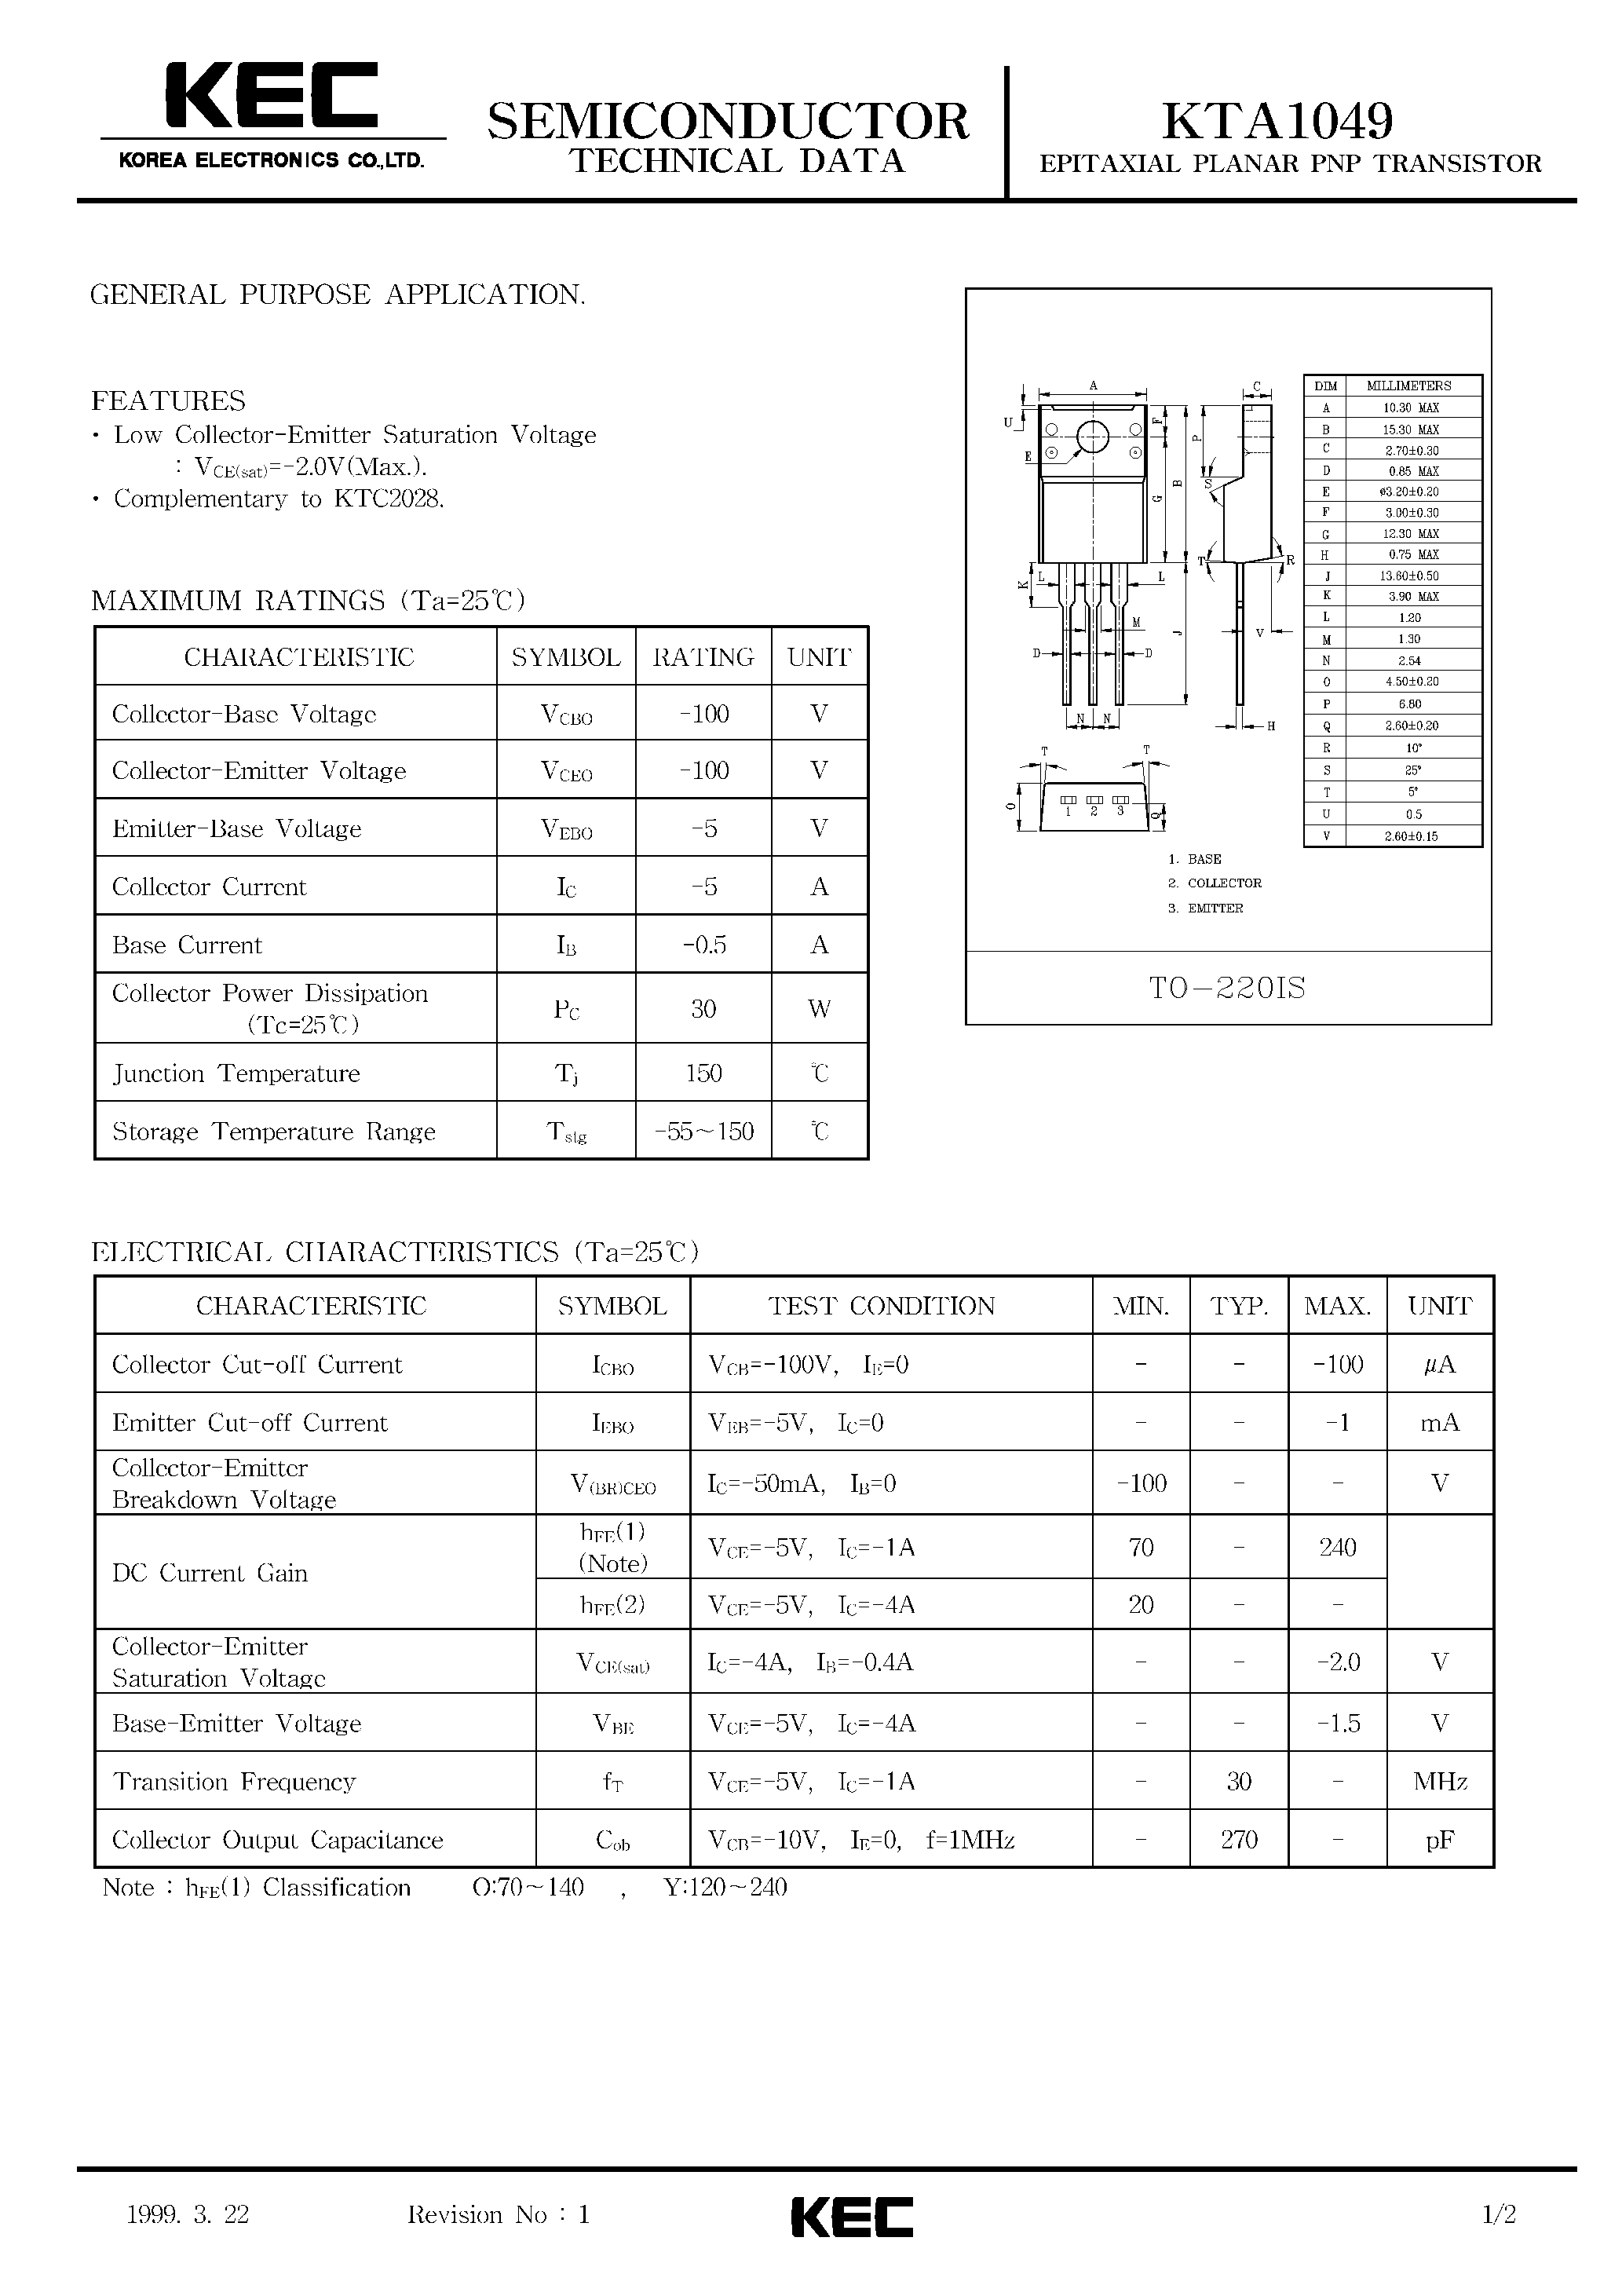 Datasheet KTA1049 - EPITAXIAL PLANAR PNP TRANSISTOR (GENERAL PURPOSE) page 1